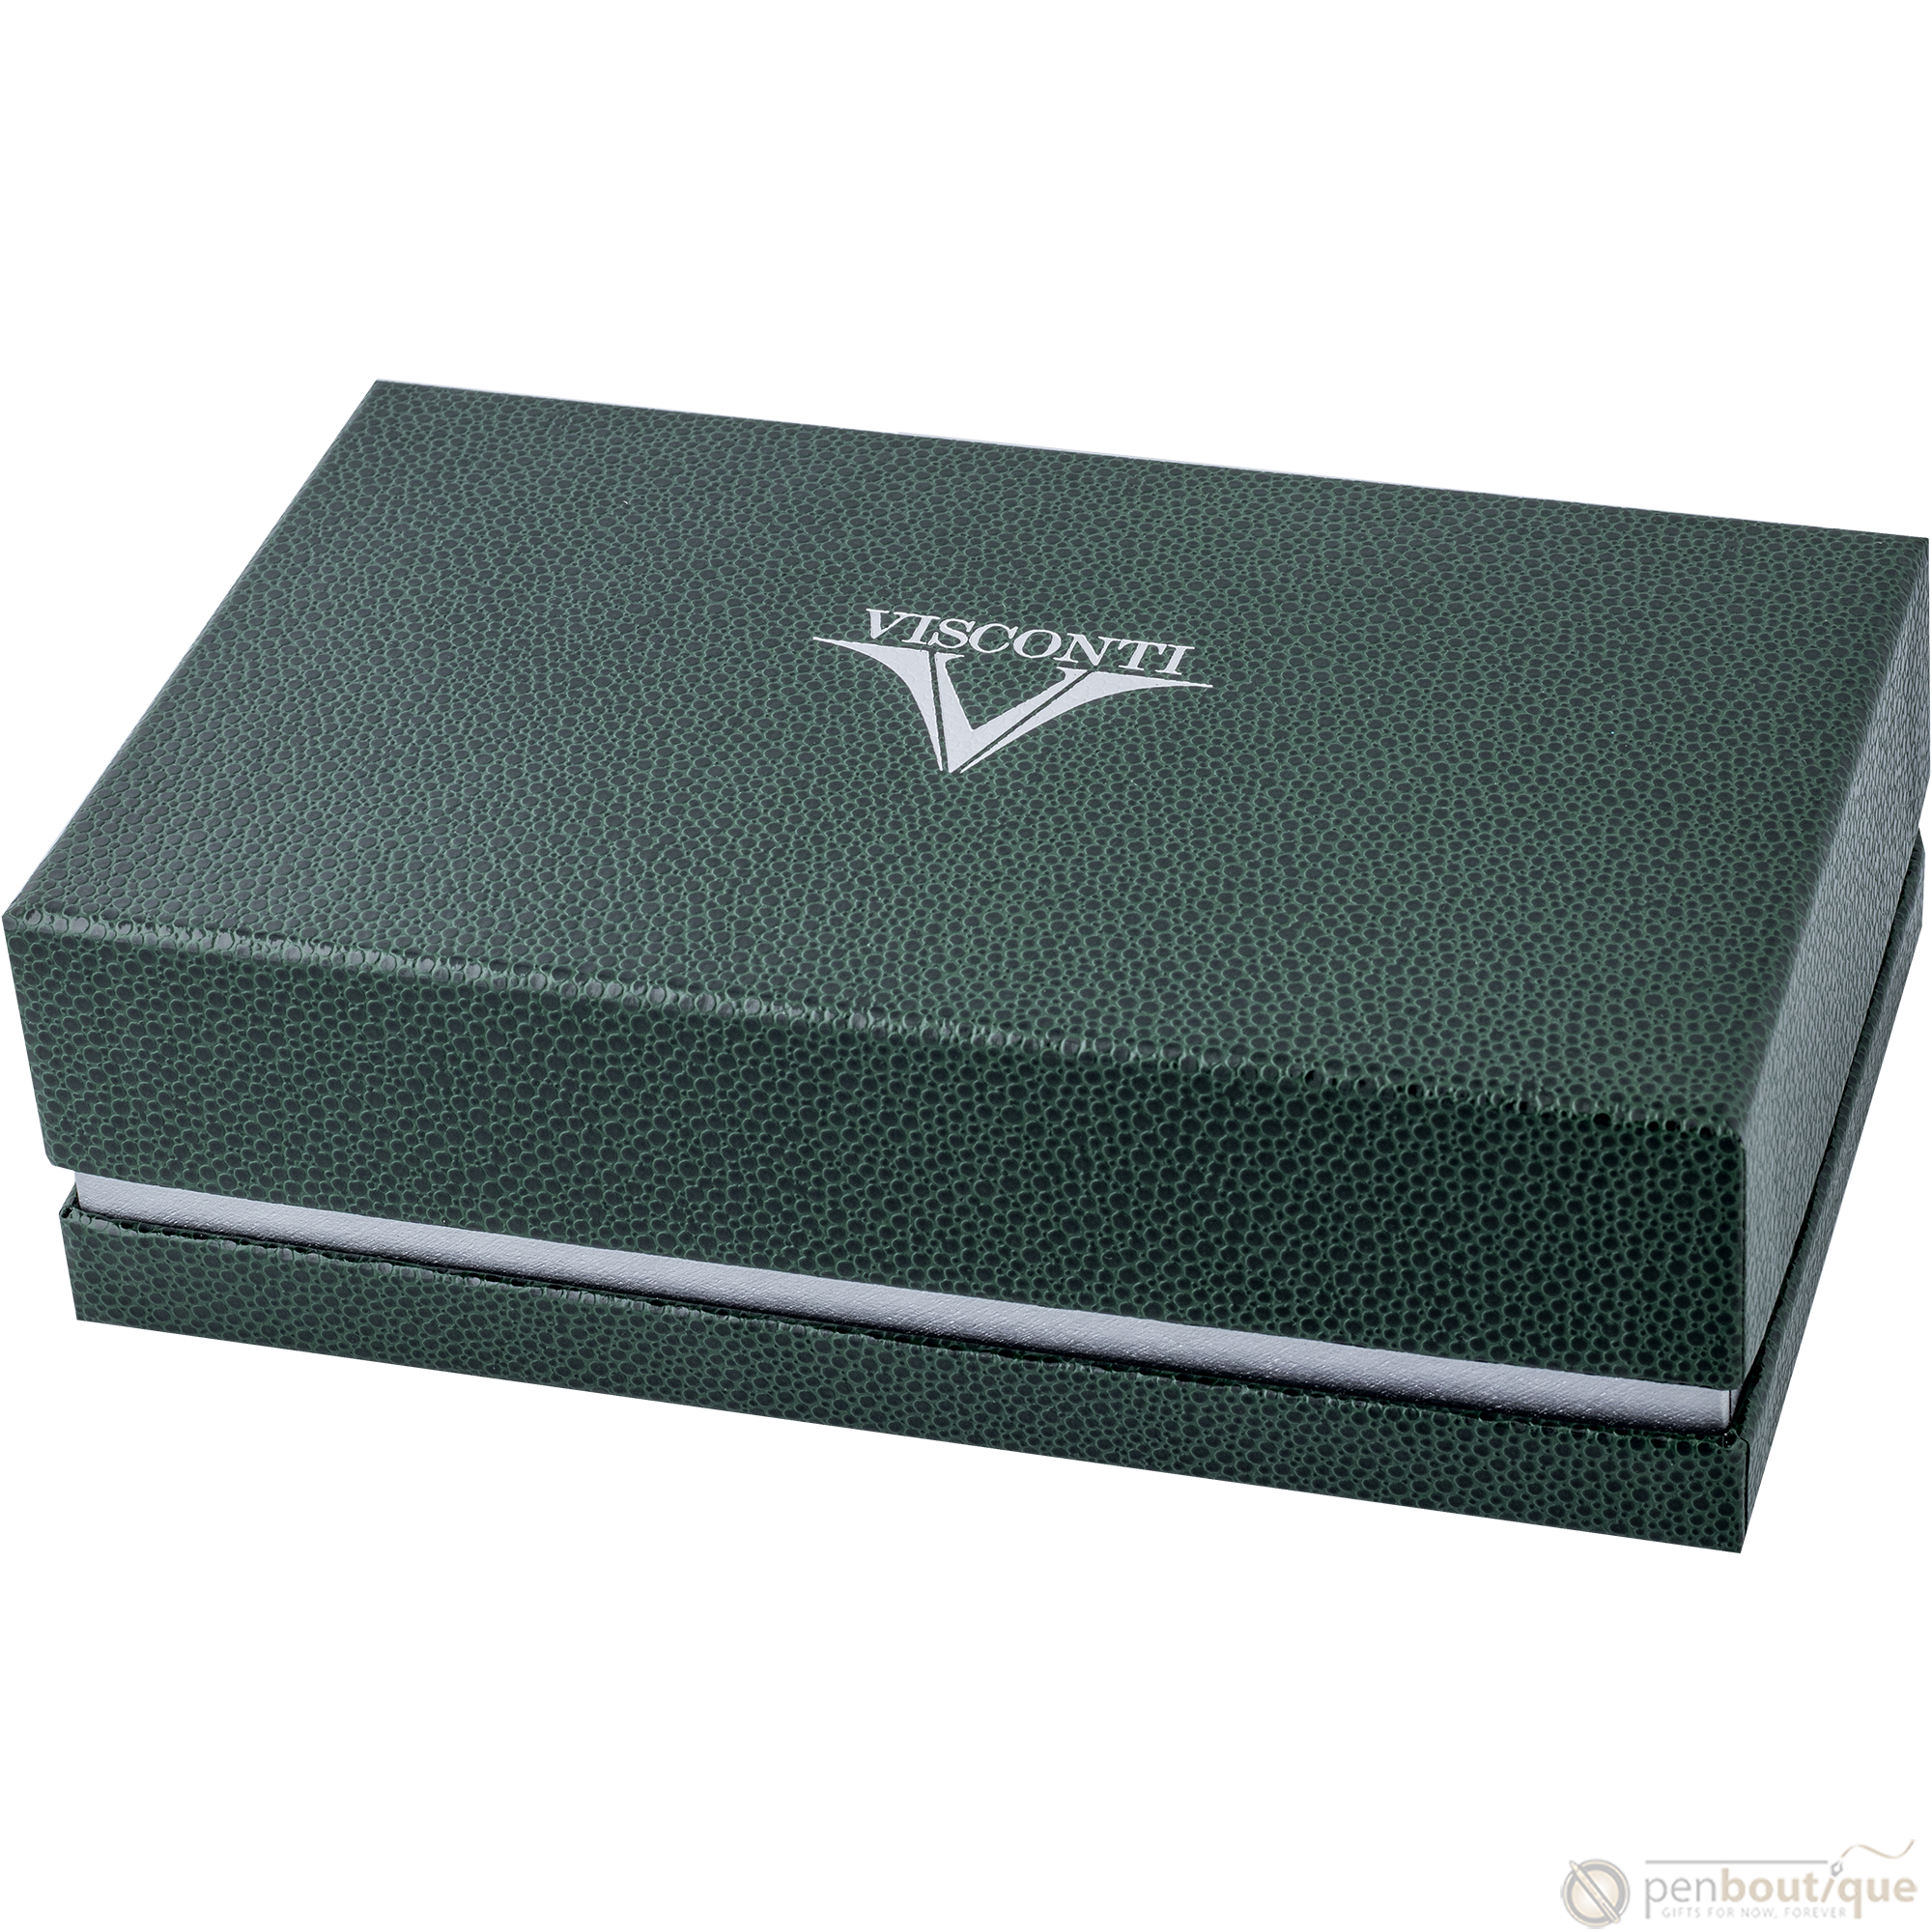 Visconti Asia Bamboo Fountain Pen - Green-Pen Boutique Ltd